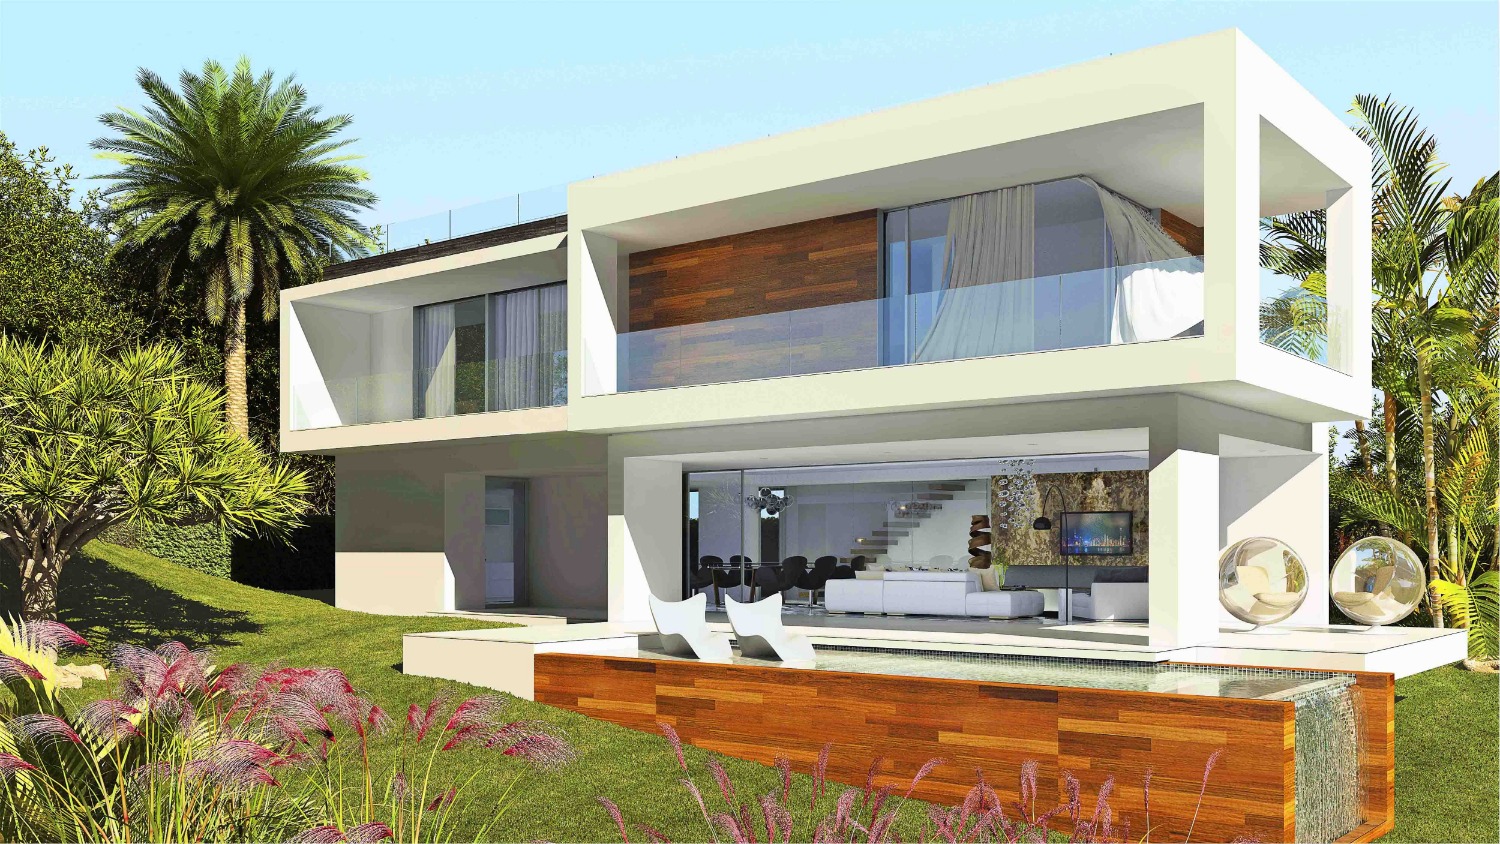 Funderar du på komfort och finish med inslag som kommer att göra ditt hus din ideala hem!?